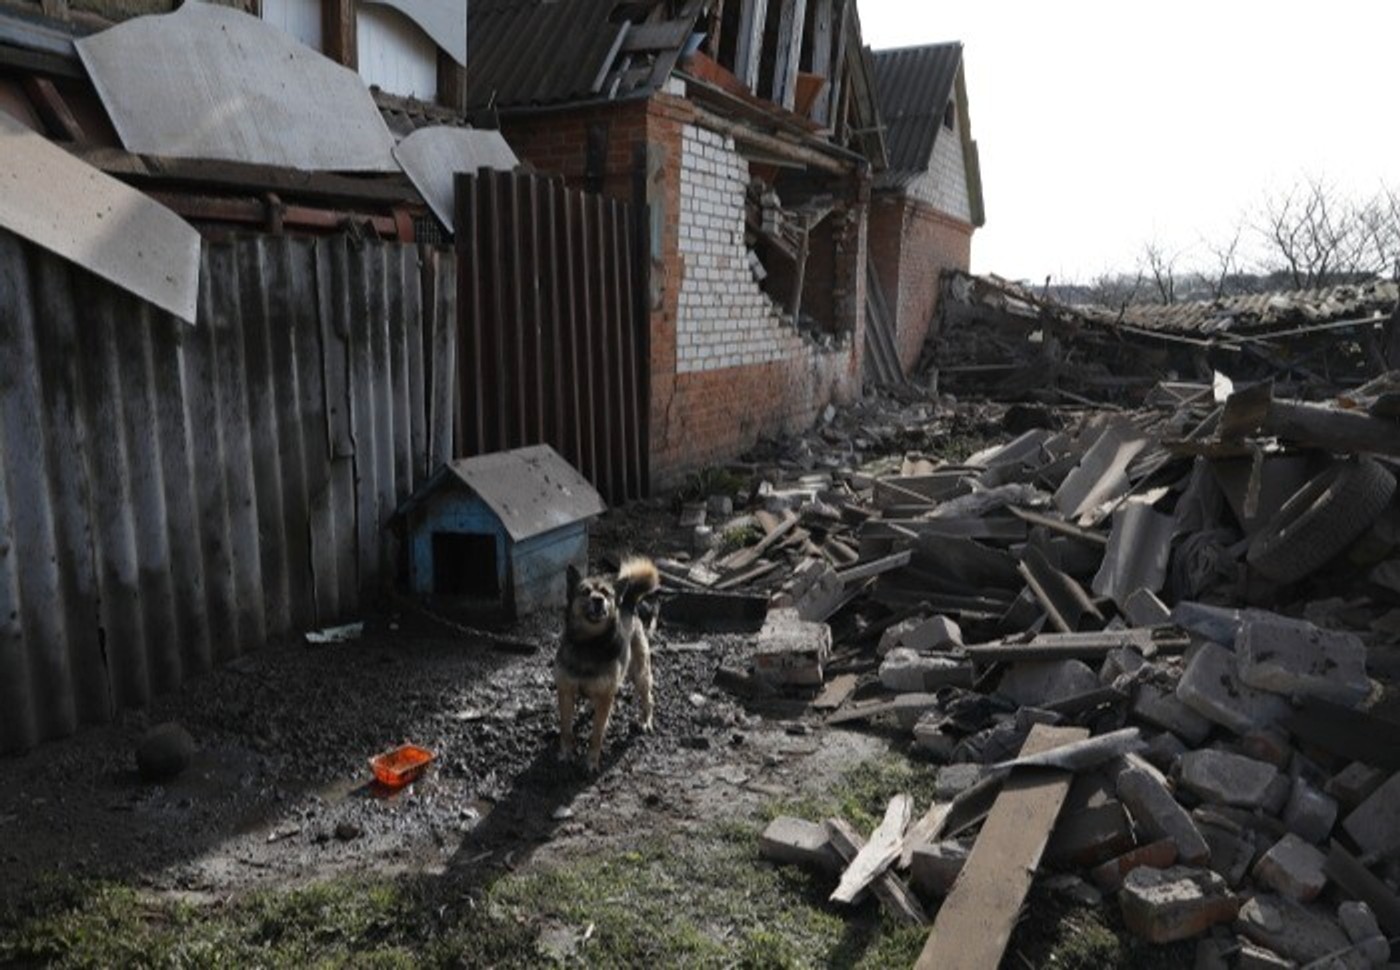 Жители Белгородской области повреждают дома и выдают это за обстрел, чтобы сделать ремонт — губернатор Гладков